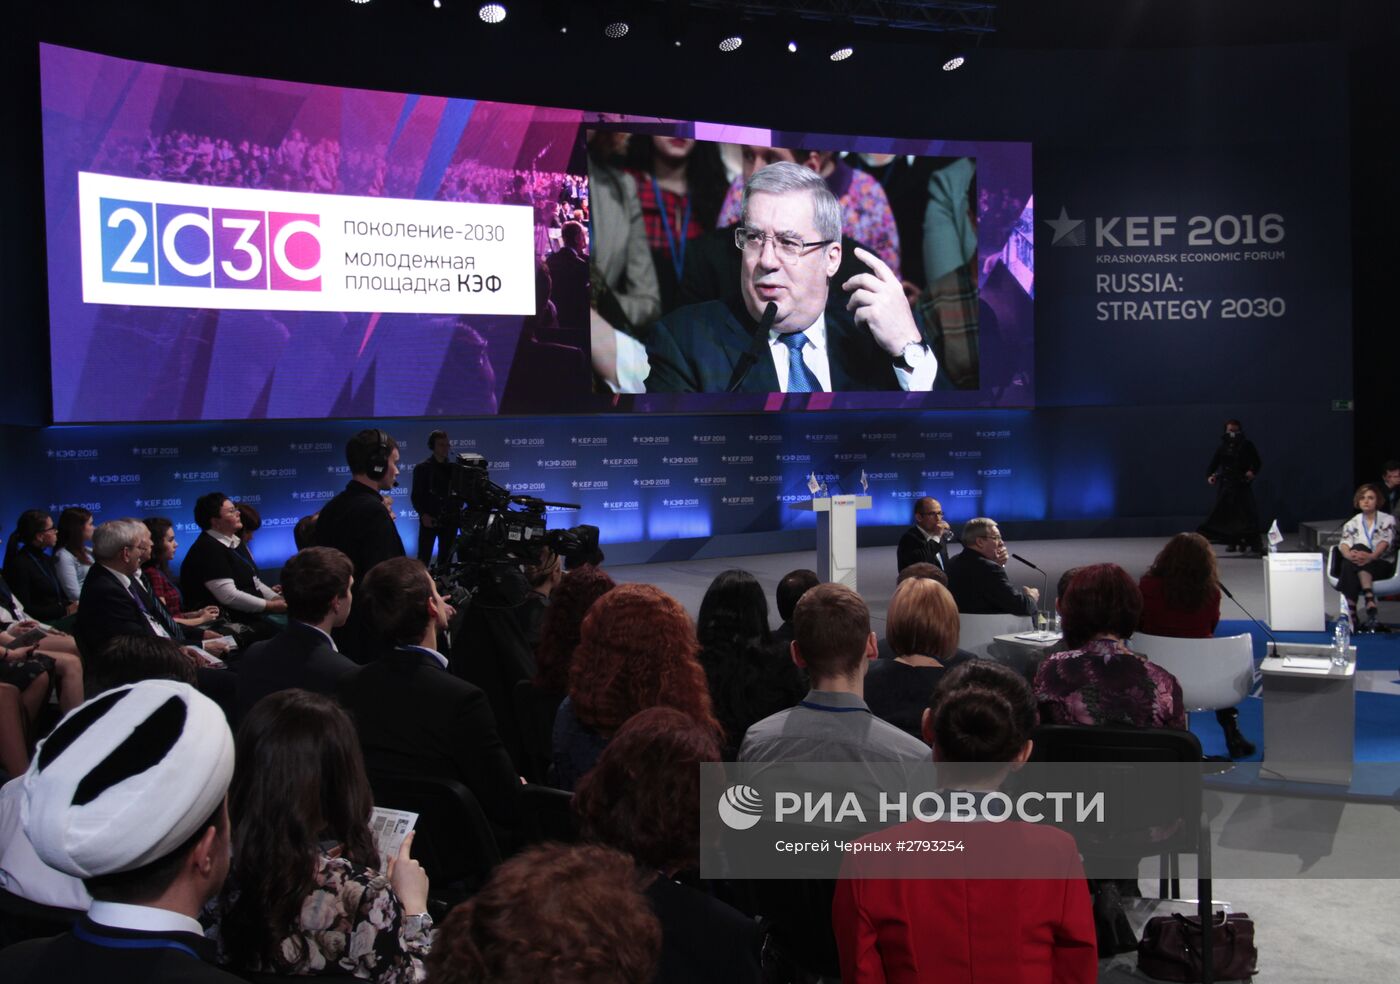 Красноярский экономический форум. Молодежная программа